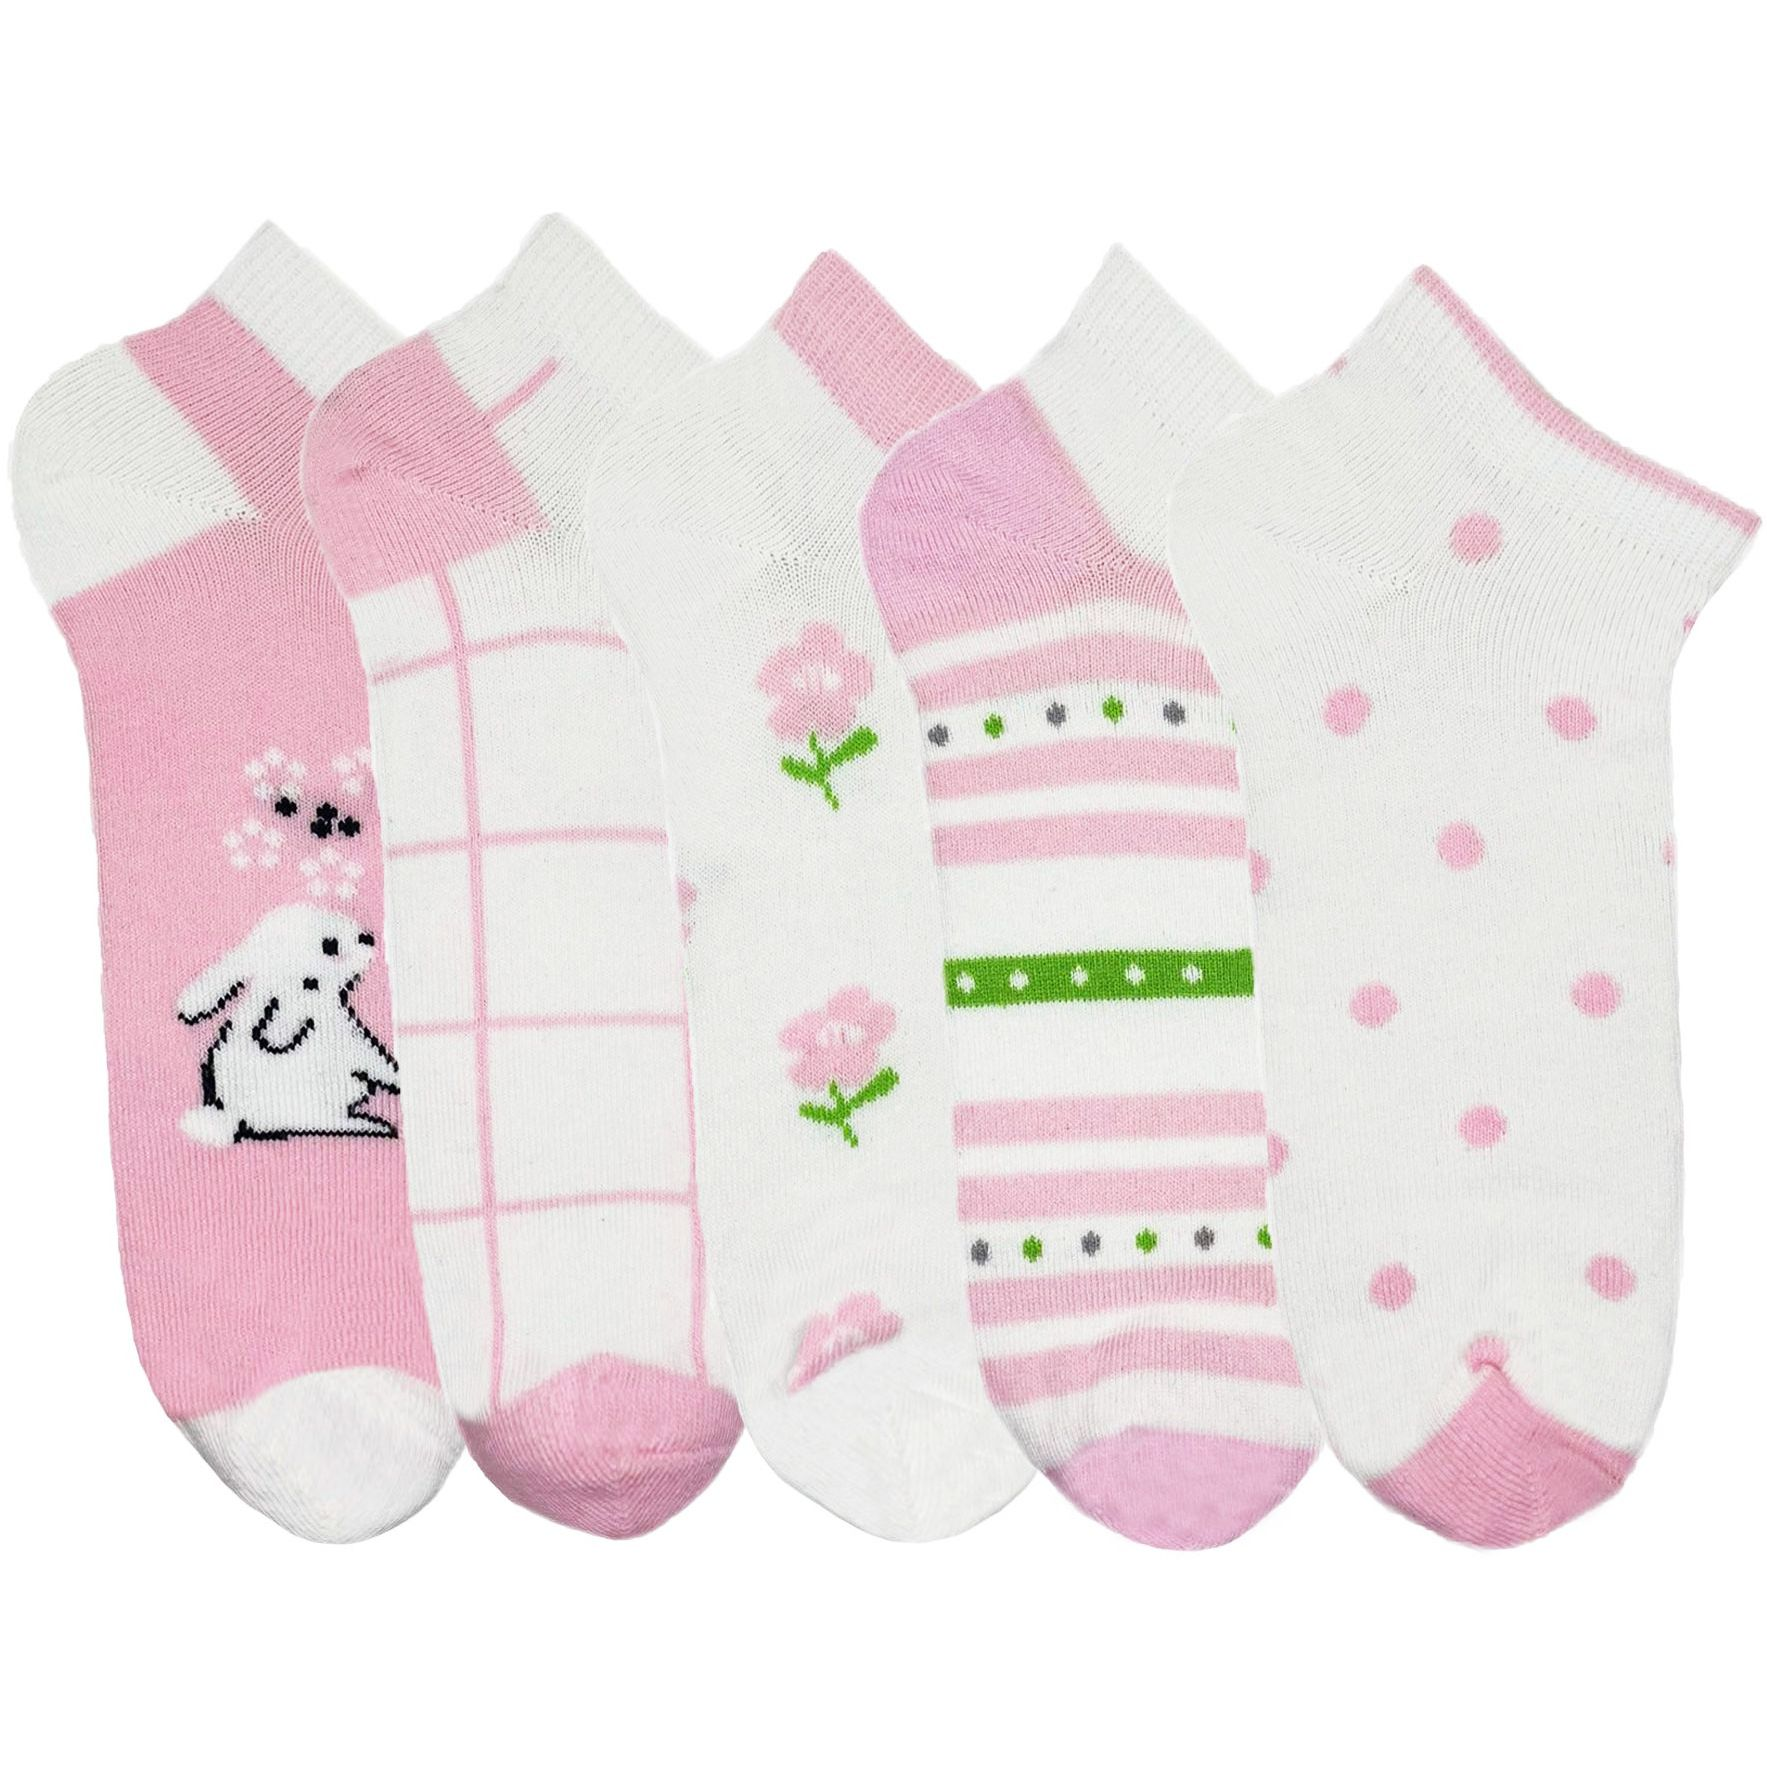 Набор носков для девочек Premier Socks 18-20 5 пар розовые с принтом (4820163319711) фото 1